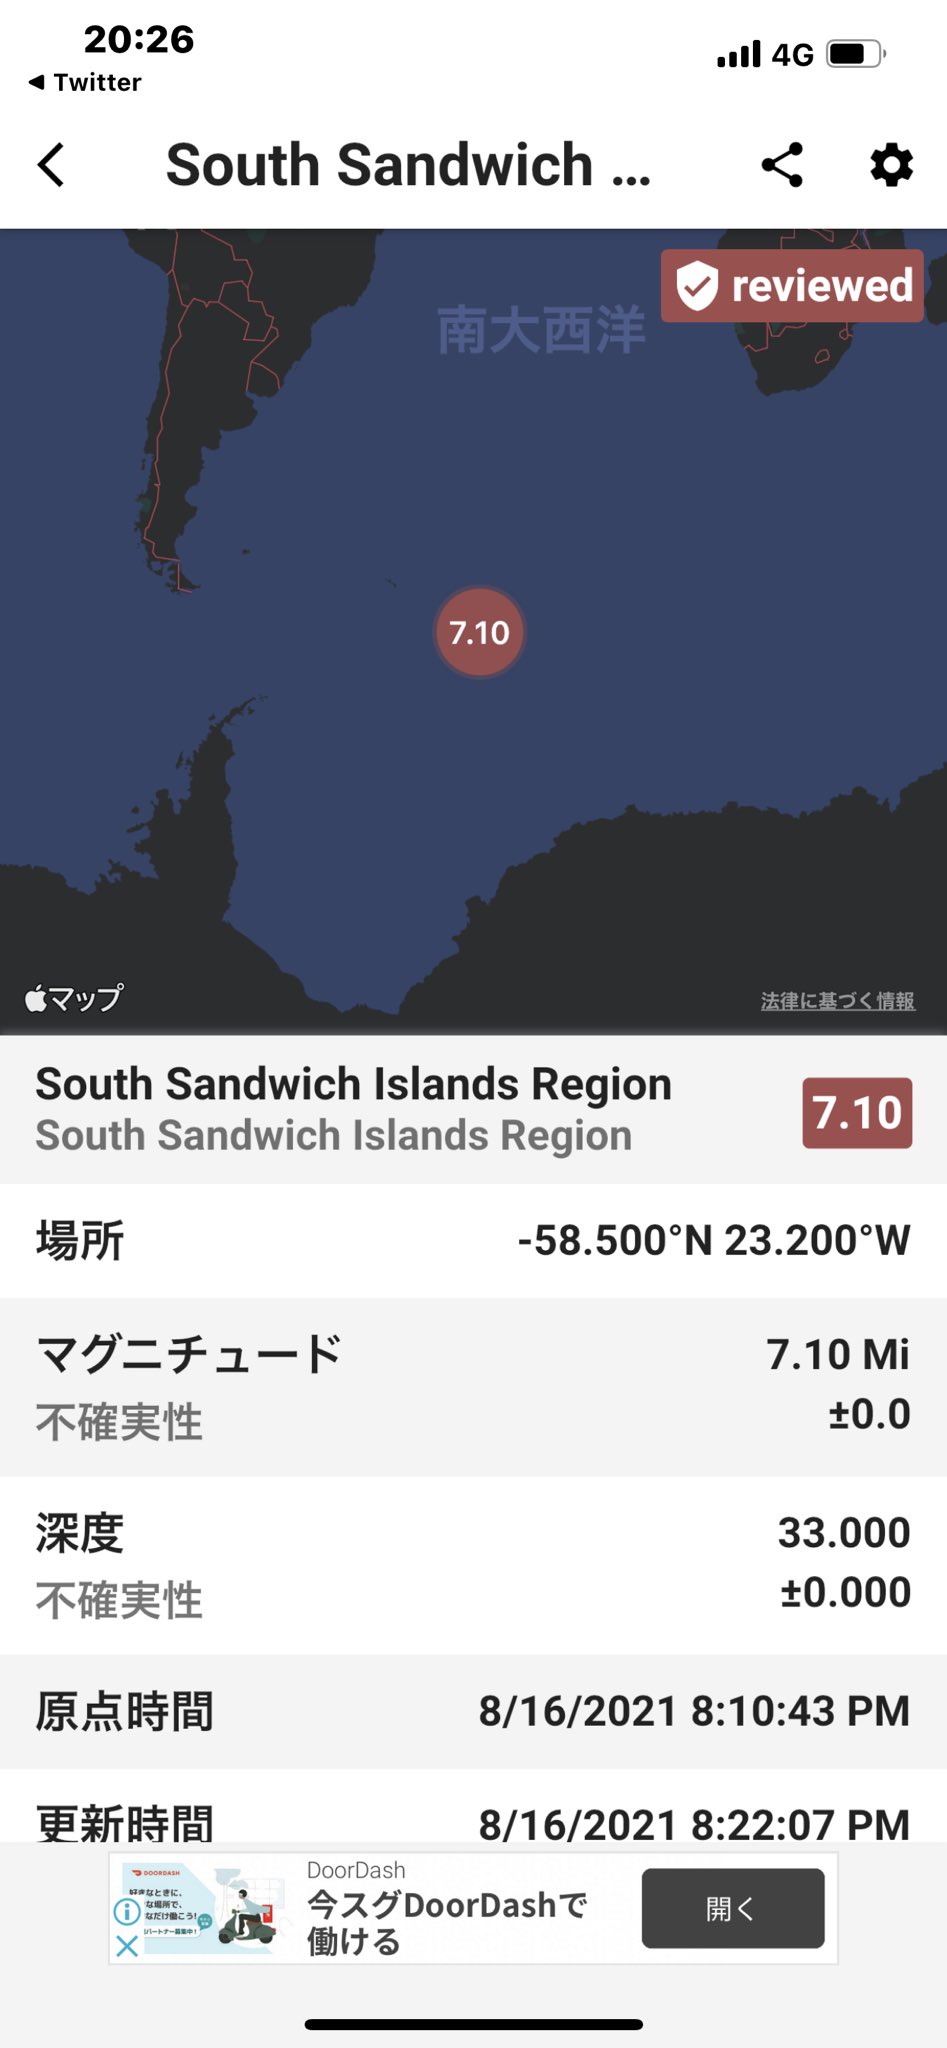 تويتر ムチャチの肉球 على تويتر 21年08月16日 時10分 日本時間 サウスジョージア サウスサンドウィッチ諸島地域 でm7 1の地震 深さ 33 0km Updated M6 9 South Sandwich Islands Region 10 0km T Co Ajsavjjtss